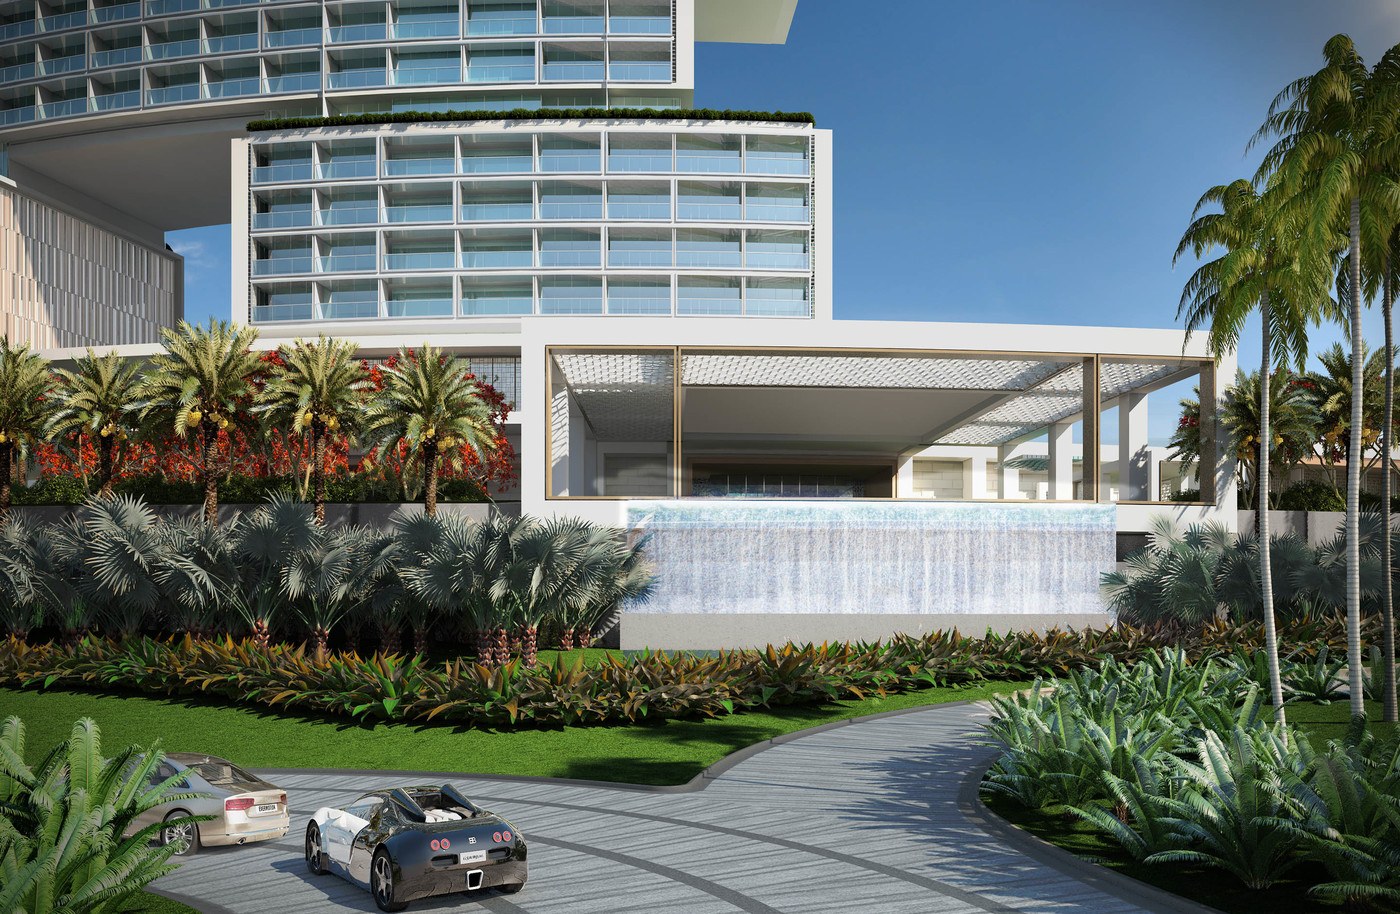 imagen 4 de The Royal Atlantis Resort & Residences, un nuevo edificio de lujo y escándalo en Dubai.